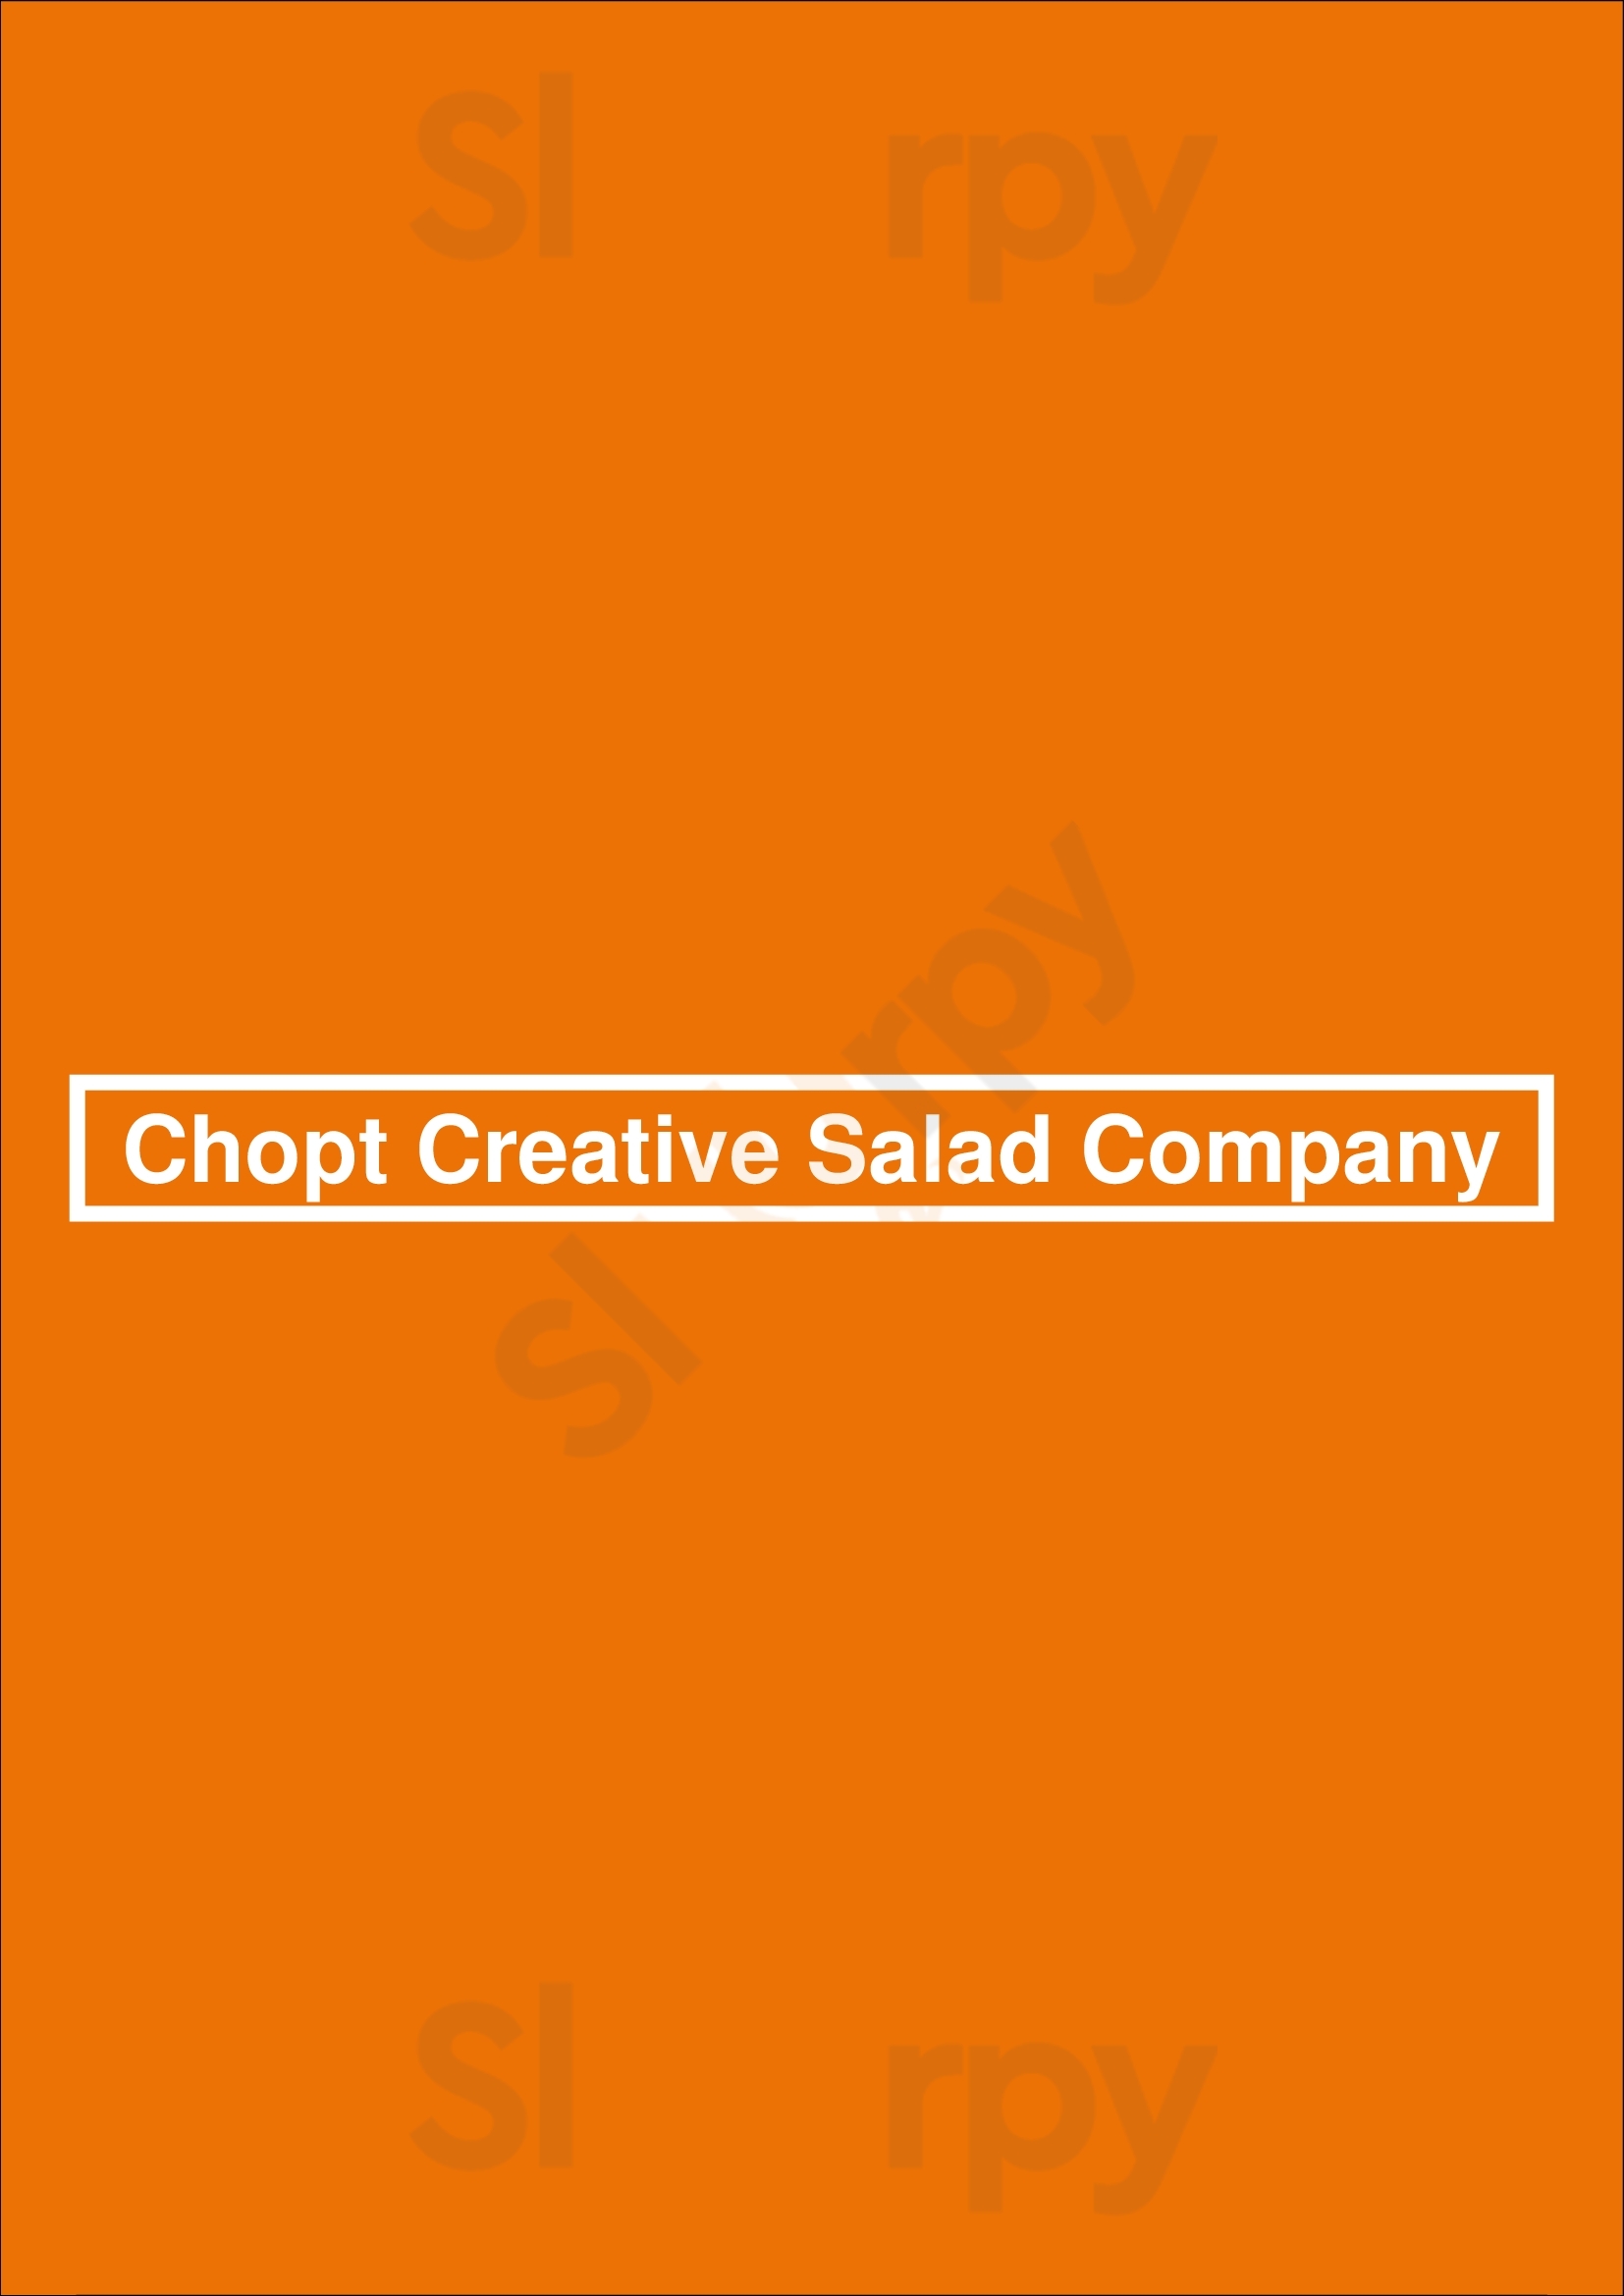 Chopt Creative Salad Company Charlotte Menu - 1